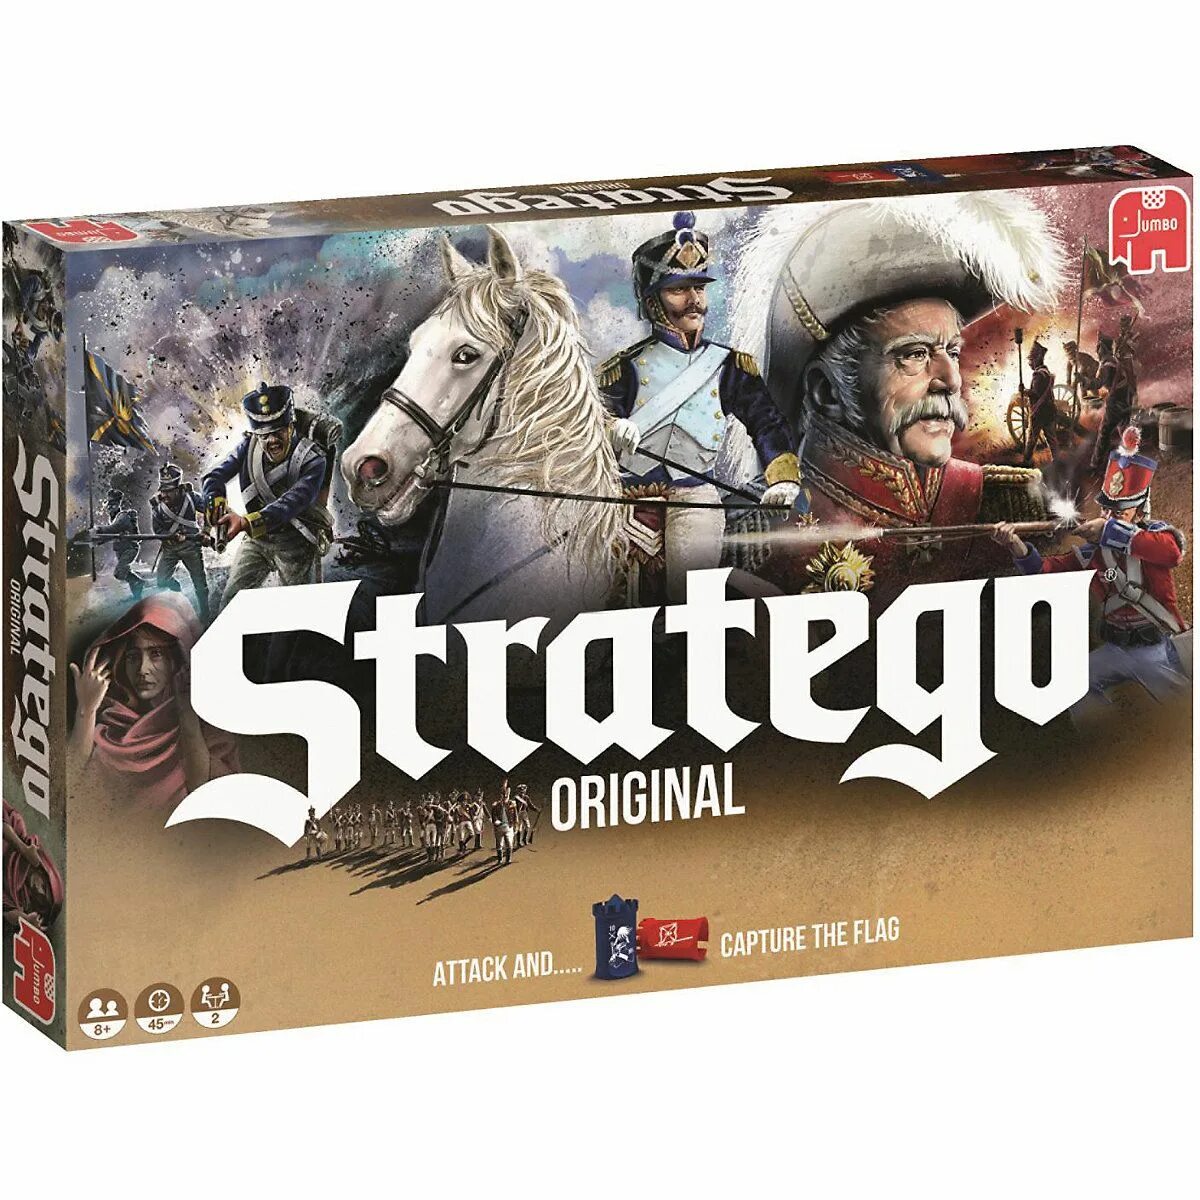 Настольная игра Stratego Original. Джамбо игра. Стратего настольная игра купить. Битва стратегов настольная игра. Настольная игра стратего